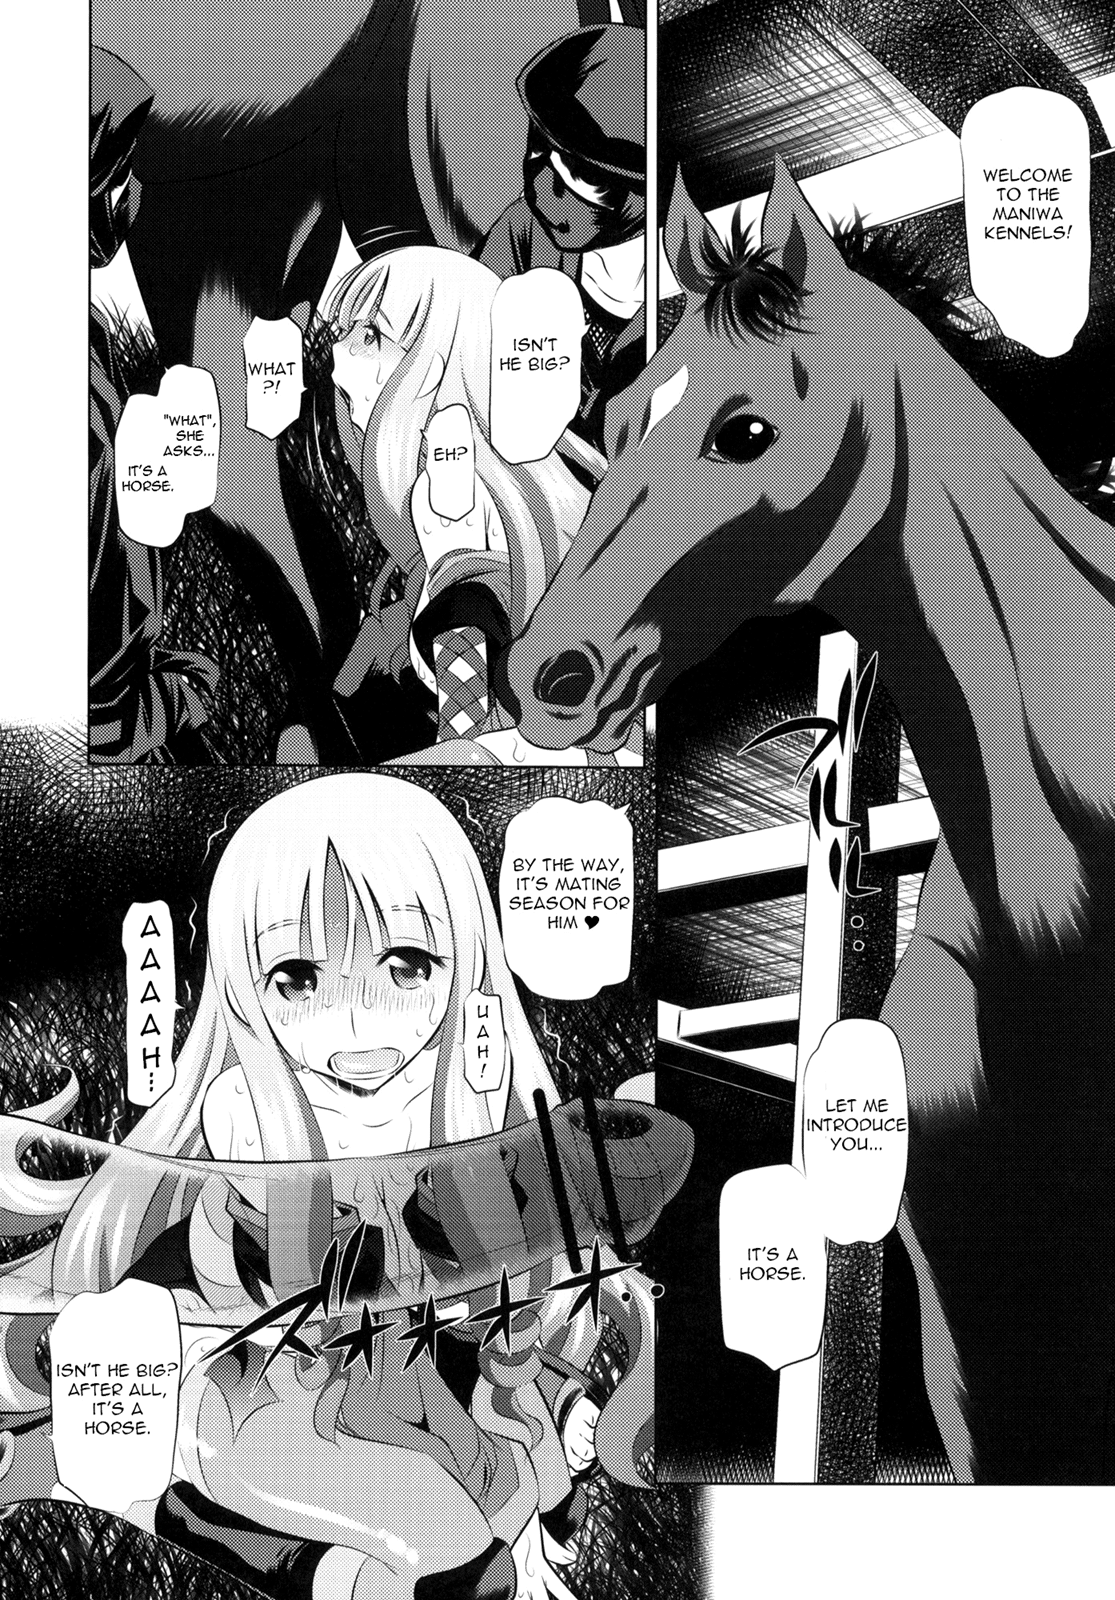 Togame vs Horse hentai manga picture 15